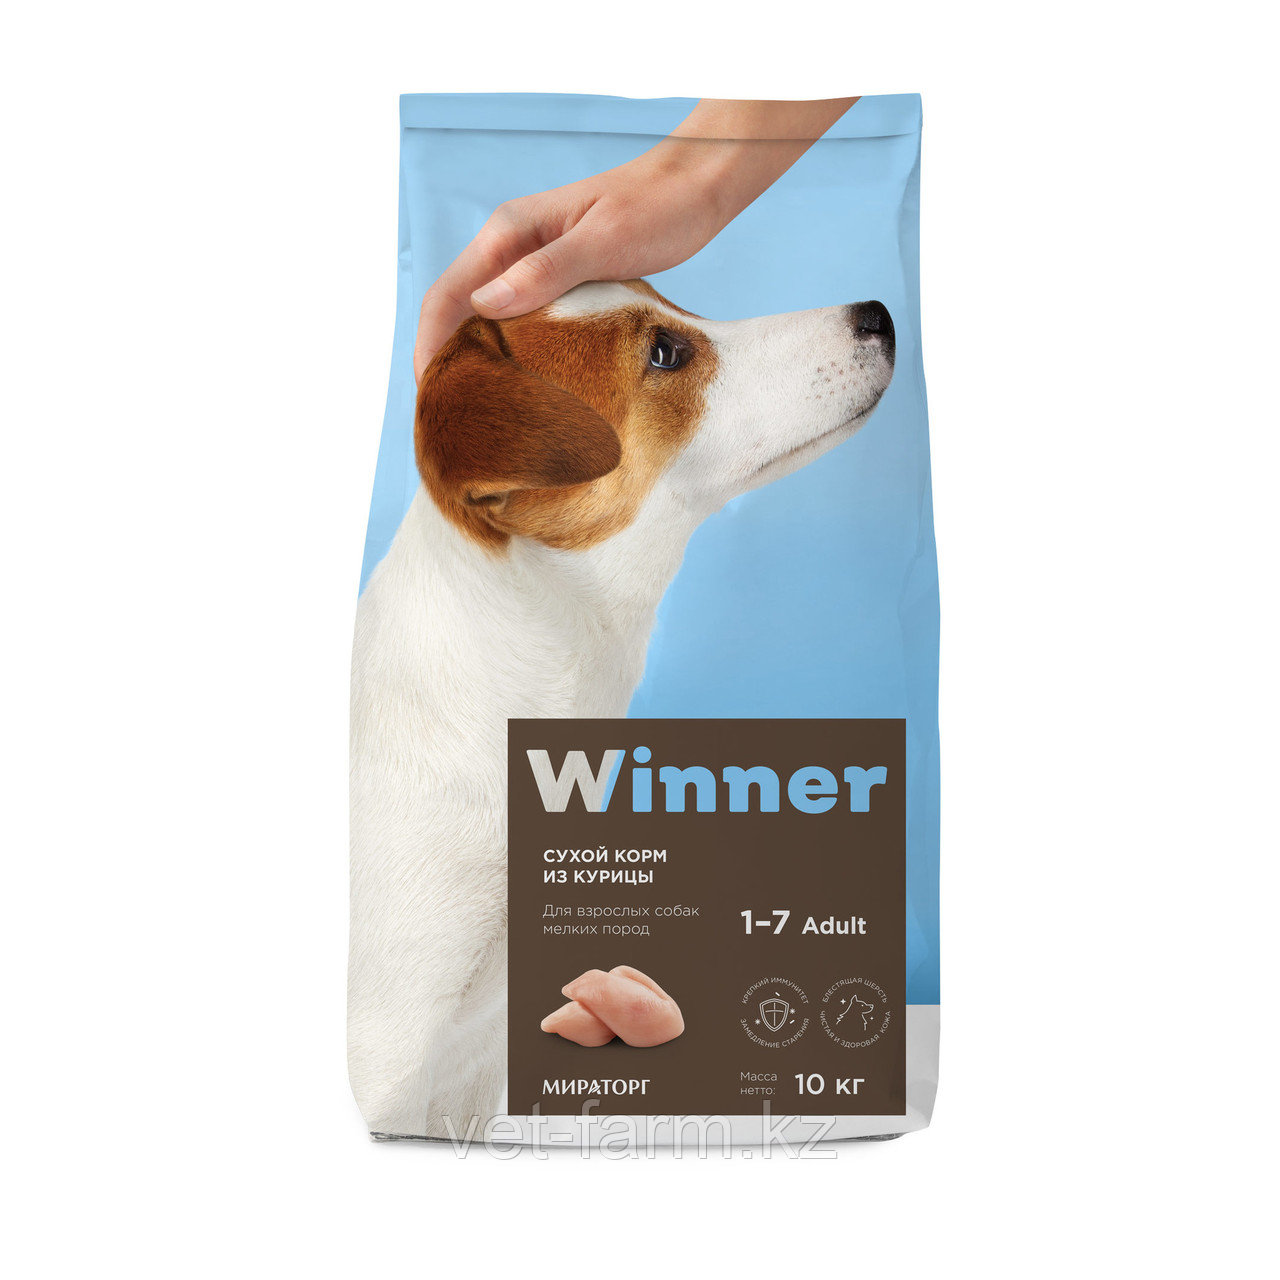 Сухой корм для собак Winner для взрослых собак мелких пород из курицы 10 кг